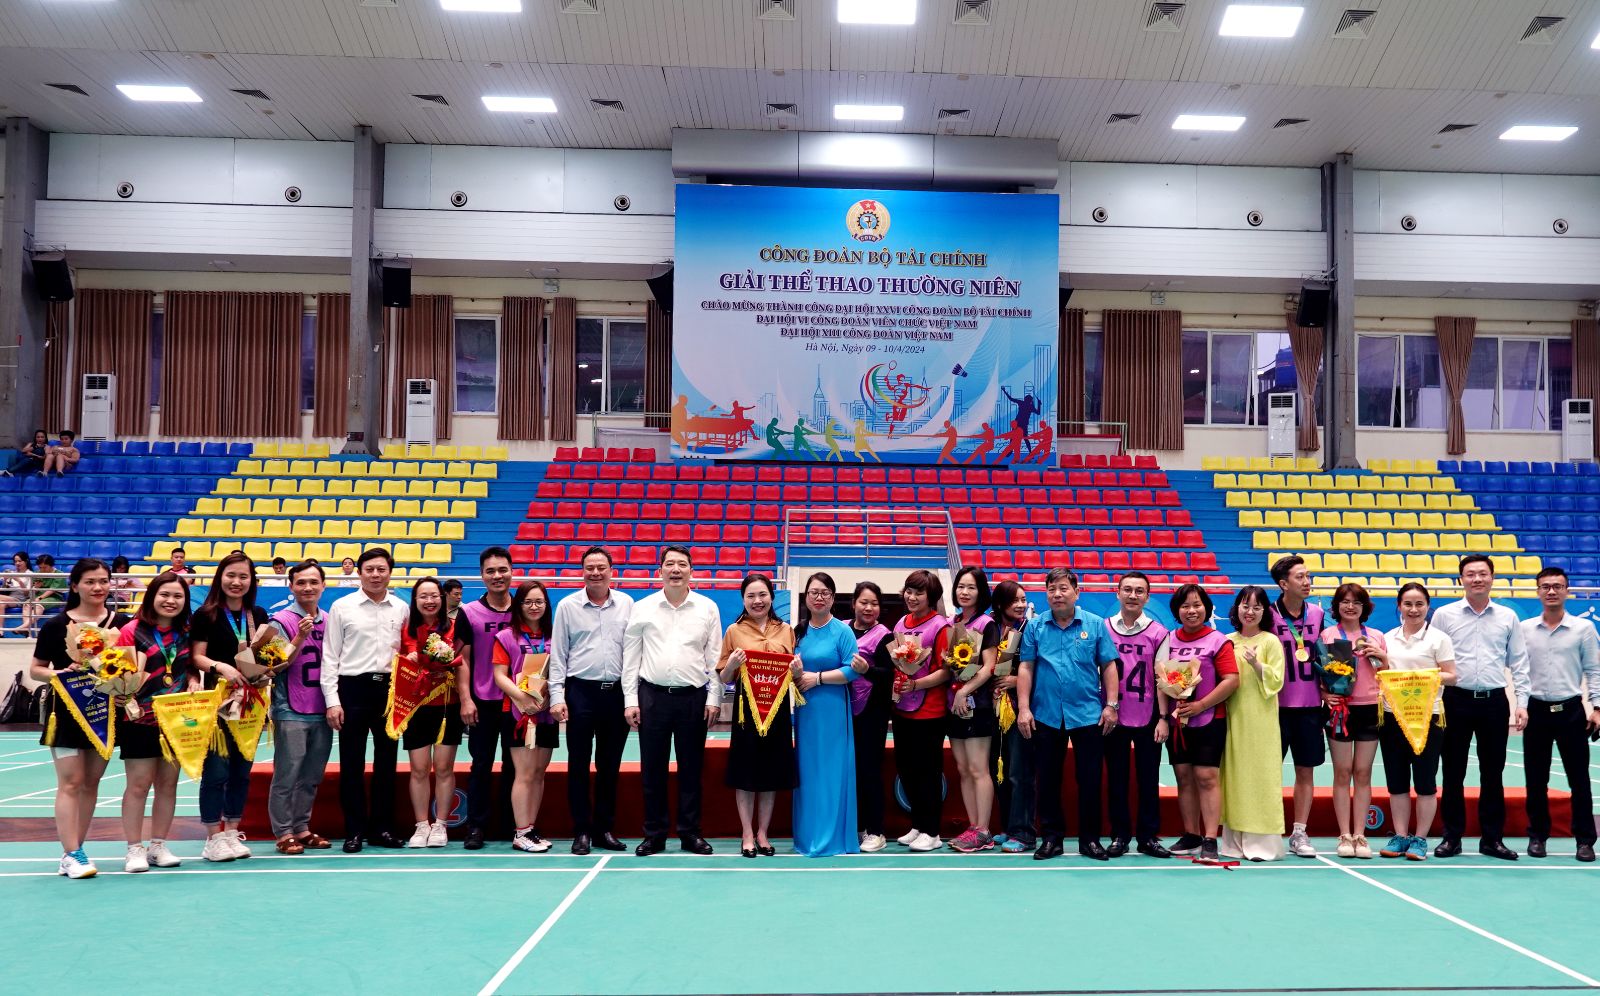 Thứ trưởng Cao Anh Tuấn và các đại biểu chụp ảnh trao giải với các đội có thành tích xuất sắc (Trong ảnh: Đội áo tím đến từ Tổng cục Thuế đạt giải Nhất ở Bộ môn Kéo co)